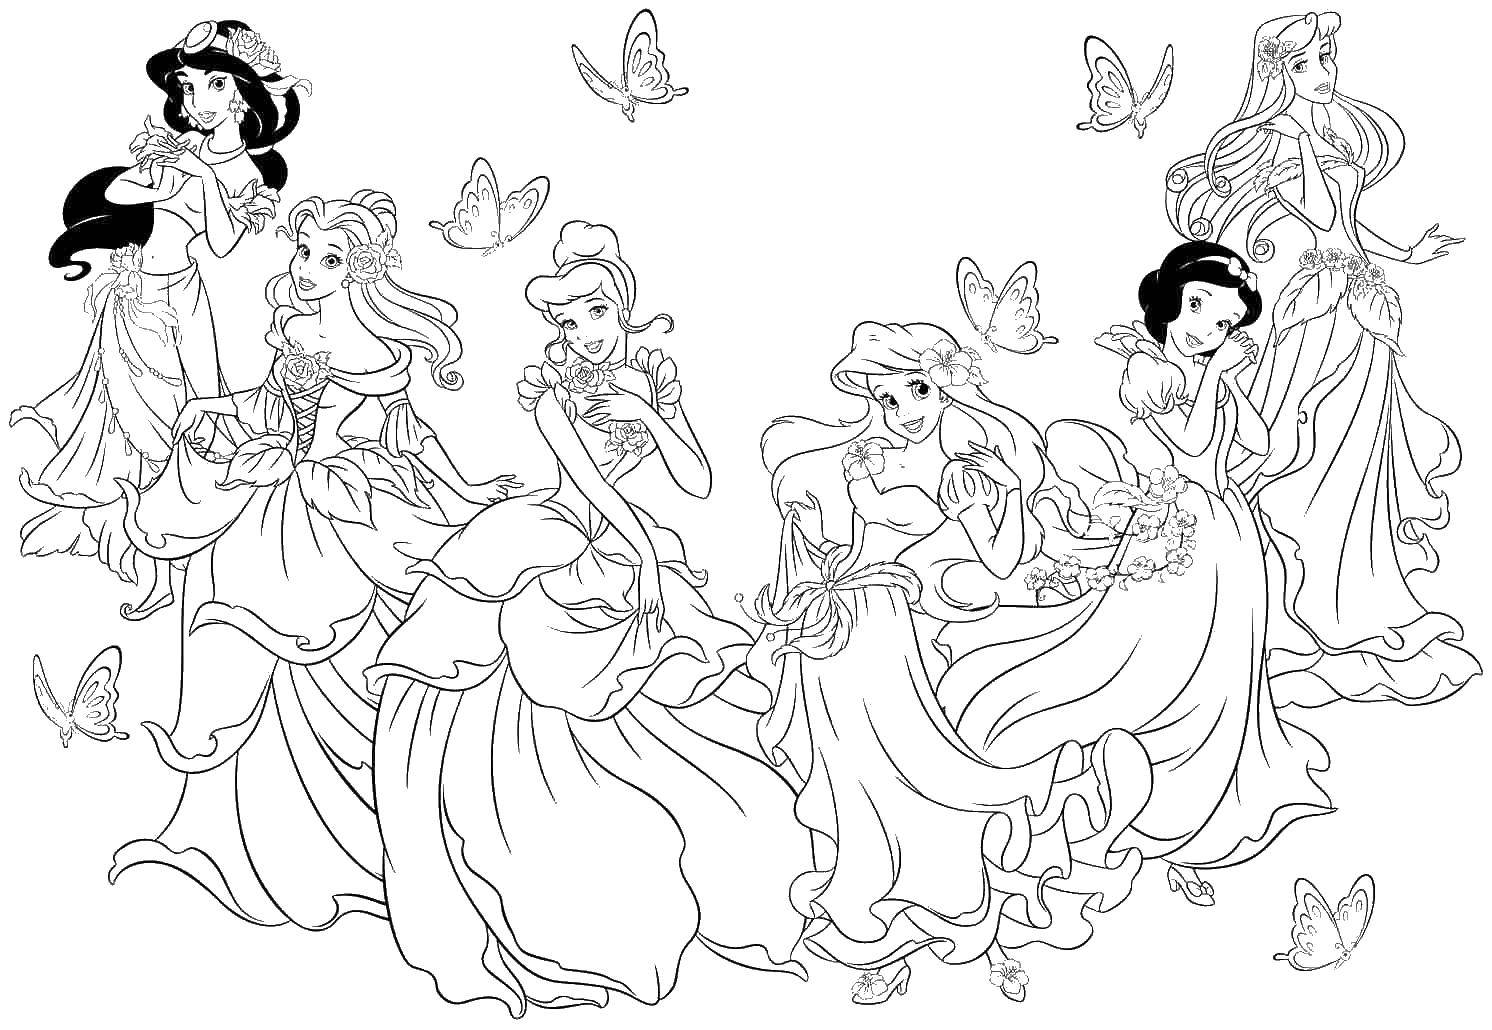 Название: Раскраска Диснеевские принцессы. Категория: Принцессы. Теги: принцессы, Диснеевские принцессы.